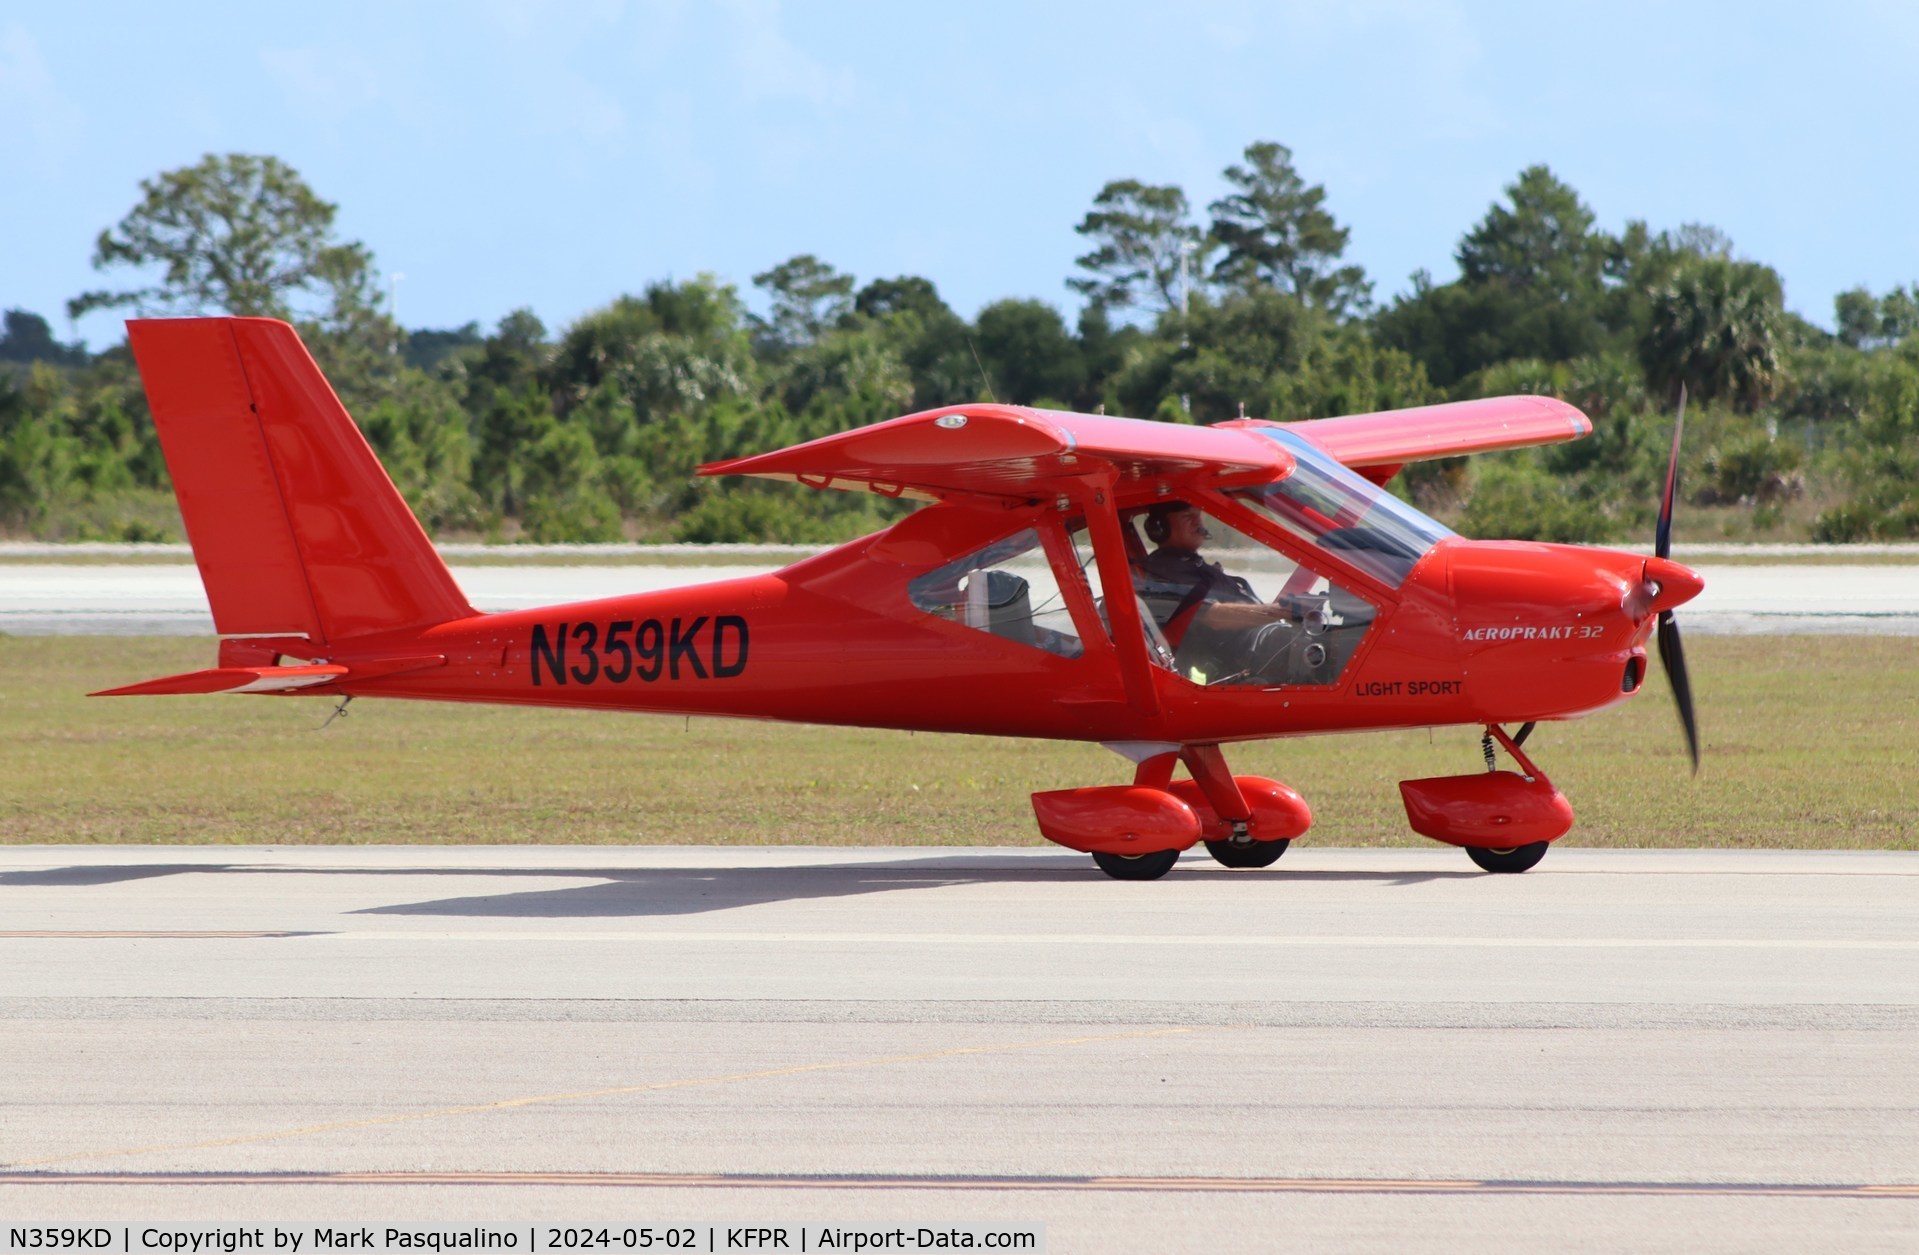 N359KD, 2020 Aeroprakt A32 C/N 152, Aeroprapt A32